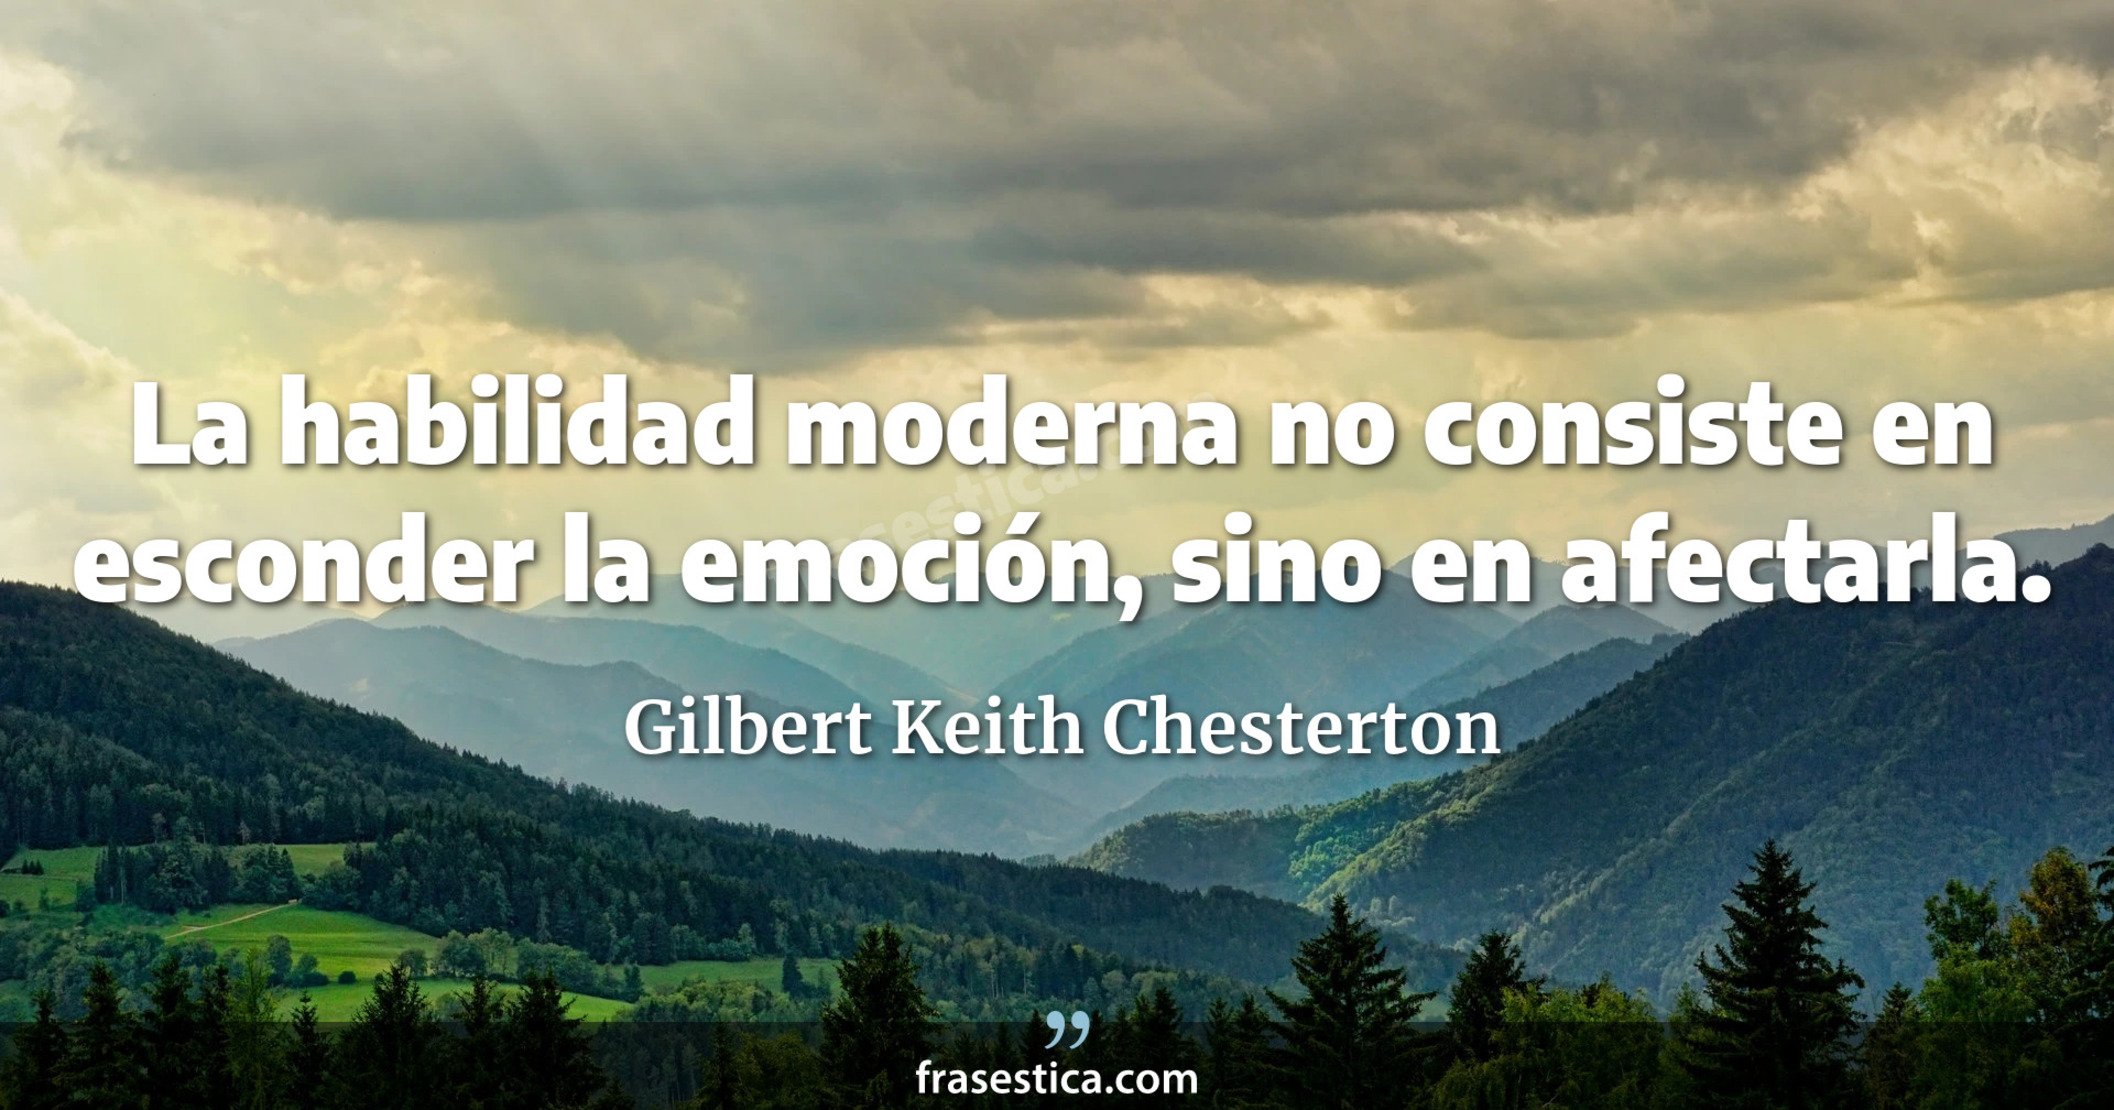 La habilidad moderna no consiste en esconder la emoción, sino en afectarla. - Gilbert Keith Chesterton